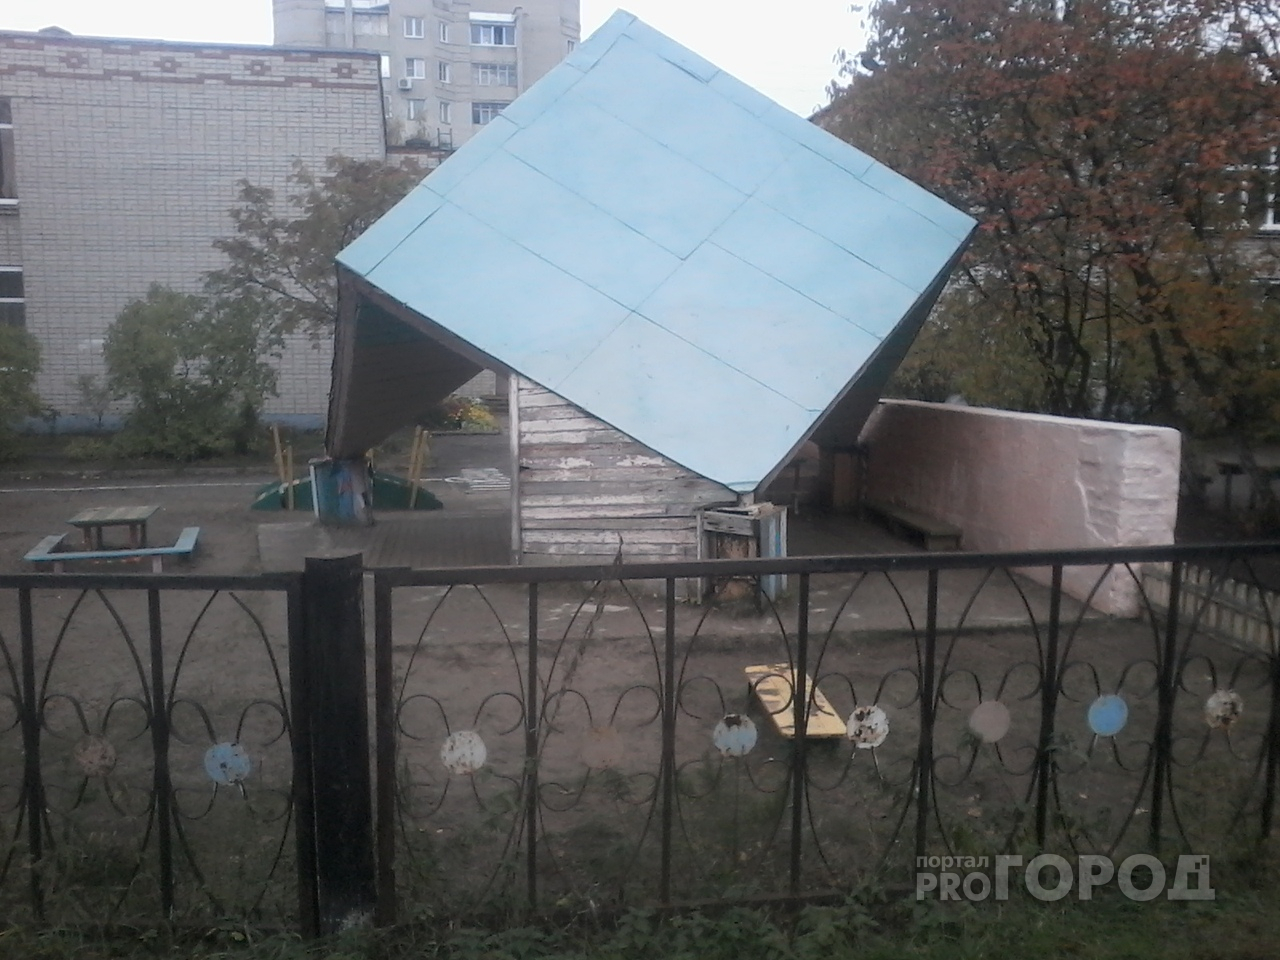 Поехала крыша: ярославцы боятся отправлять детей в детский сад Заволгой